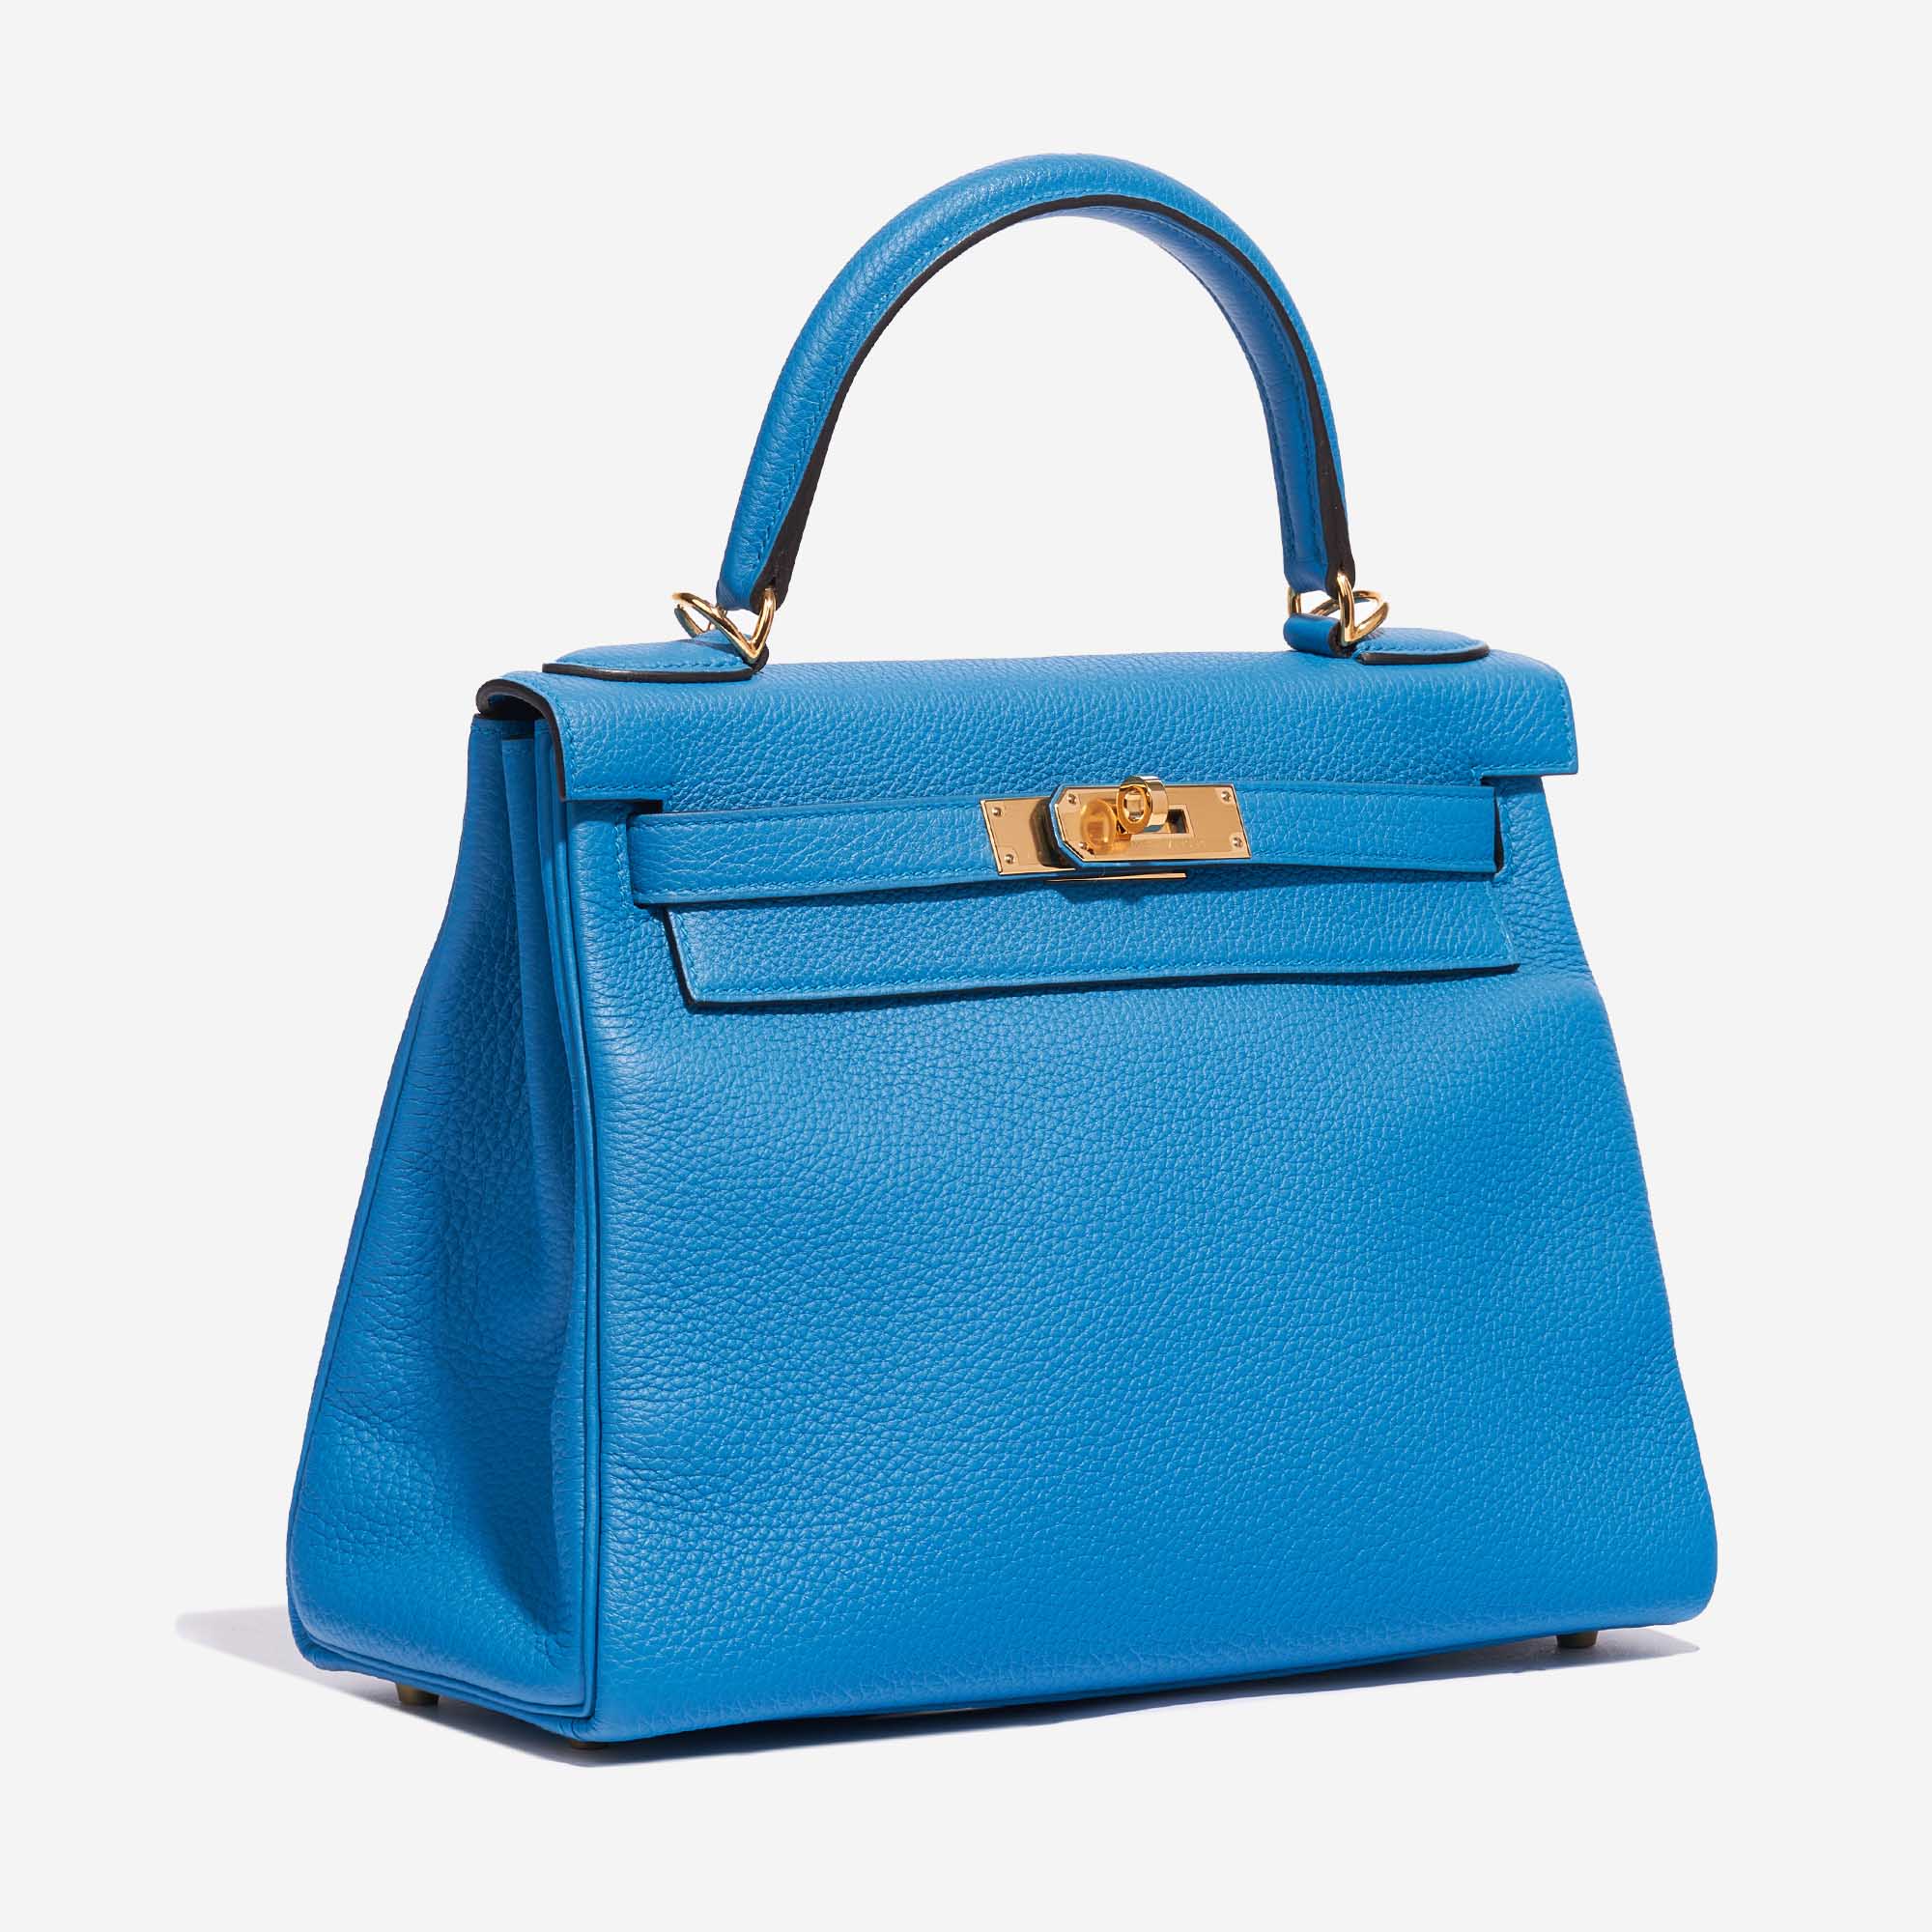 Sac Hermès d'occasion Kelly 28 Togo Bleu Zanzibar Bleu Côté Face | Vendez votre sac de créateur sur Saclab.com